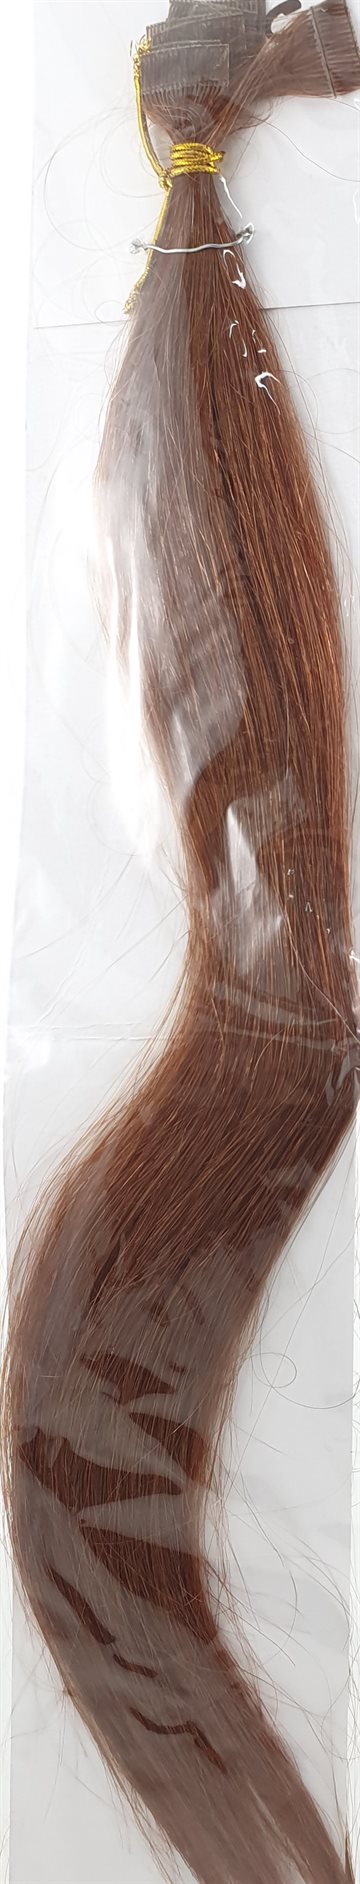 Human Hair - Skin Weft hair, color 6. 18" (45 cm. length.)